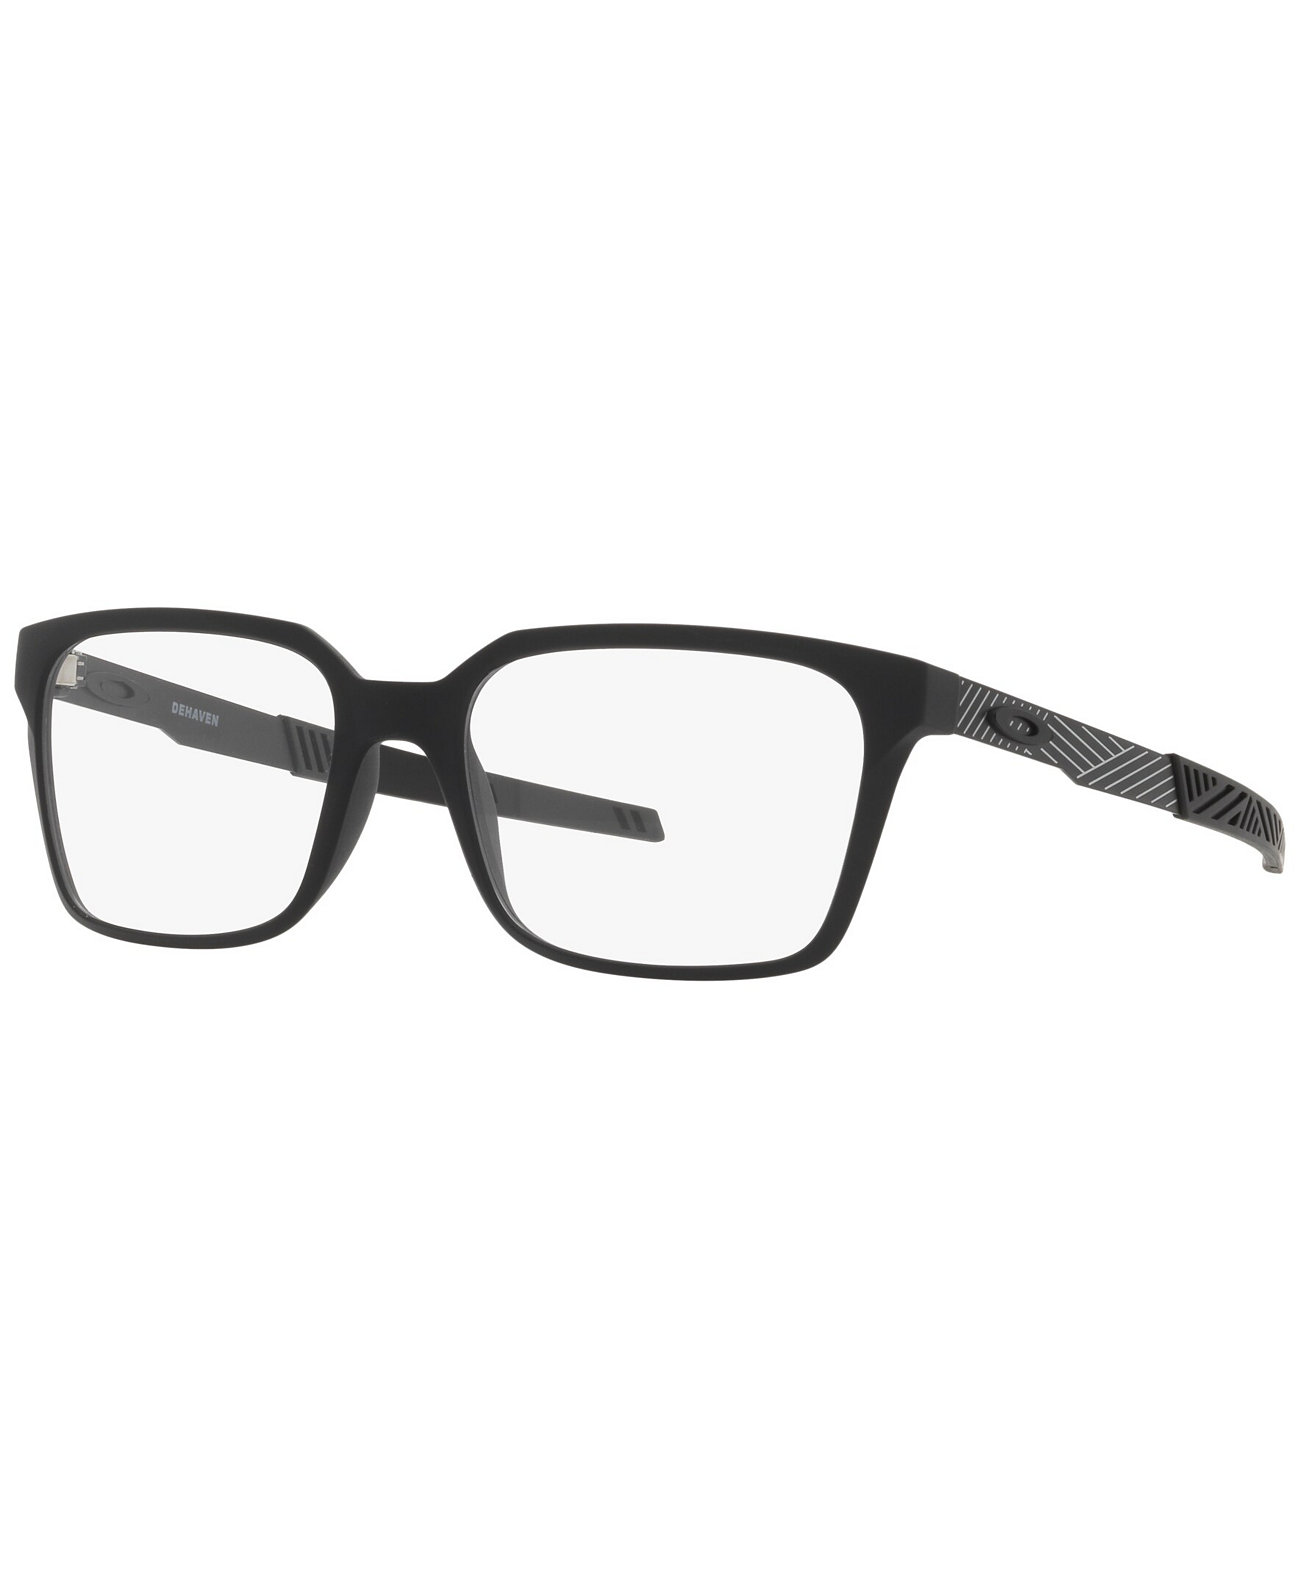 Мужские прямоугольные очки OX8054 Dehaven Oakley